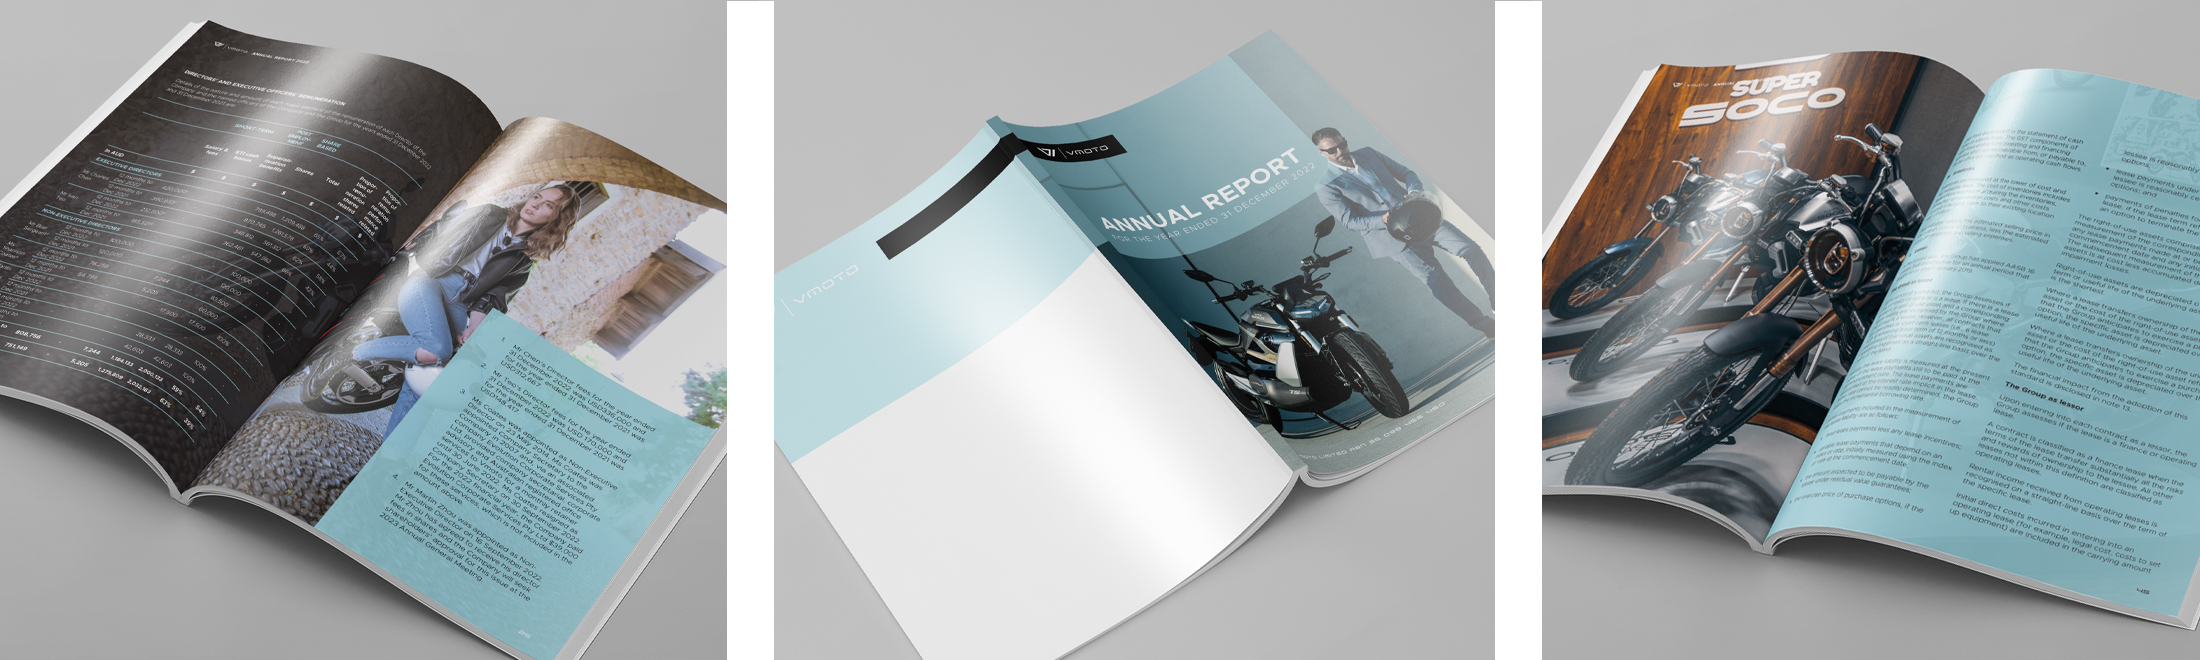 Annual report booklet design 